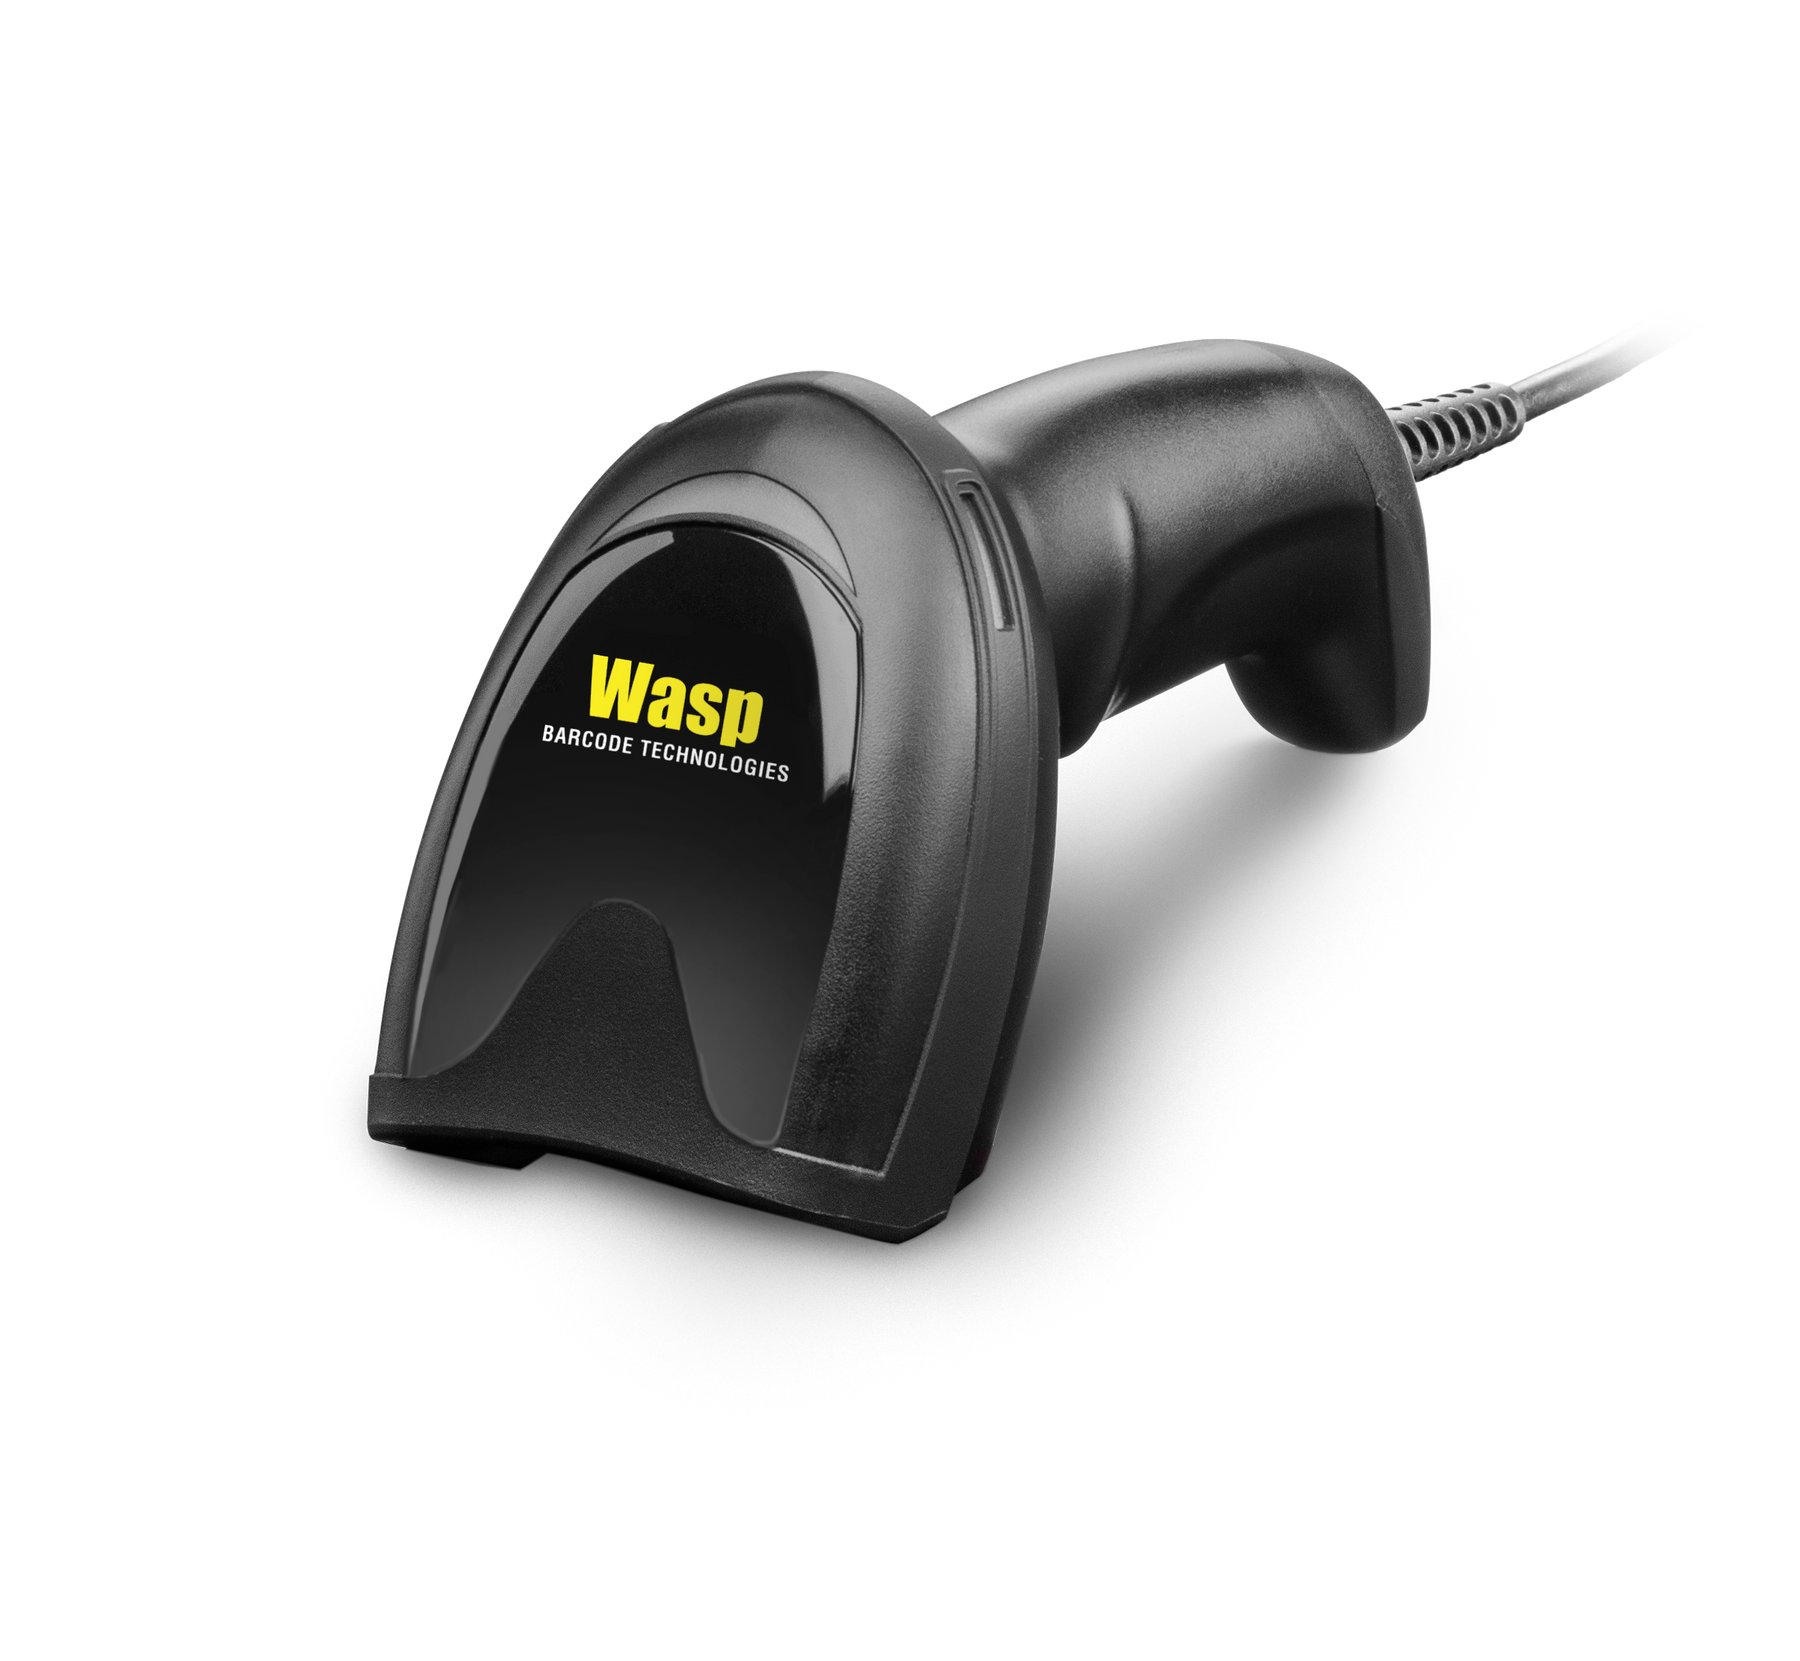 Wasp, WDI4700, 2D Scanner Digital Imager Barcode Scanner, USB